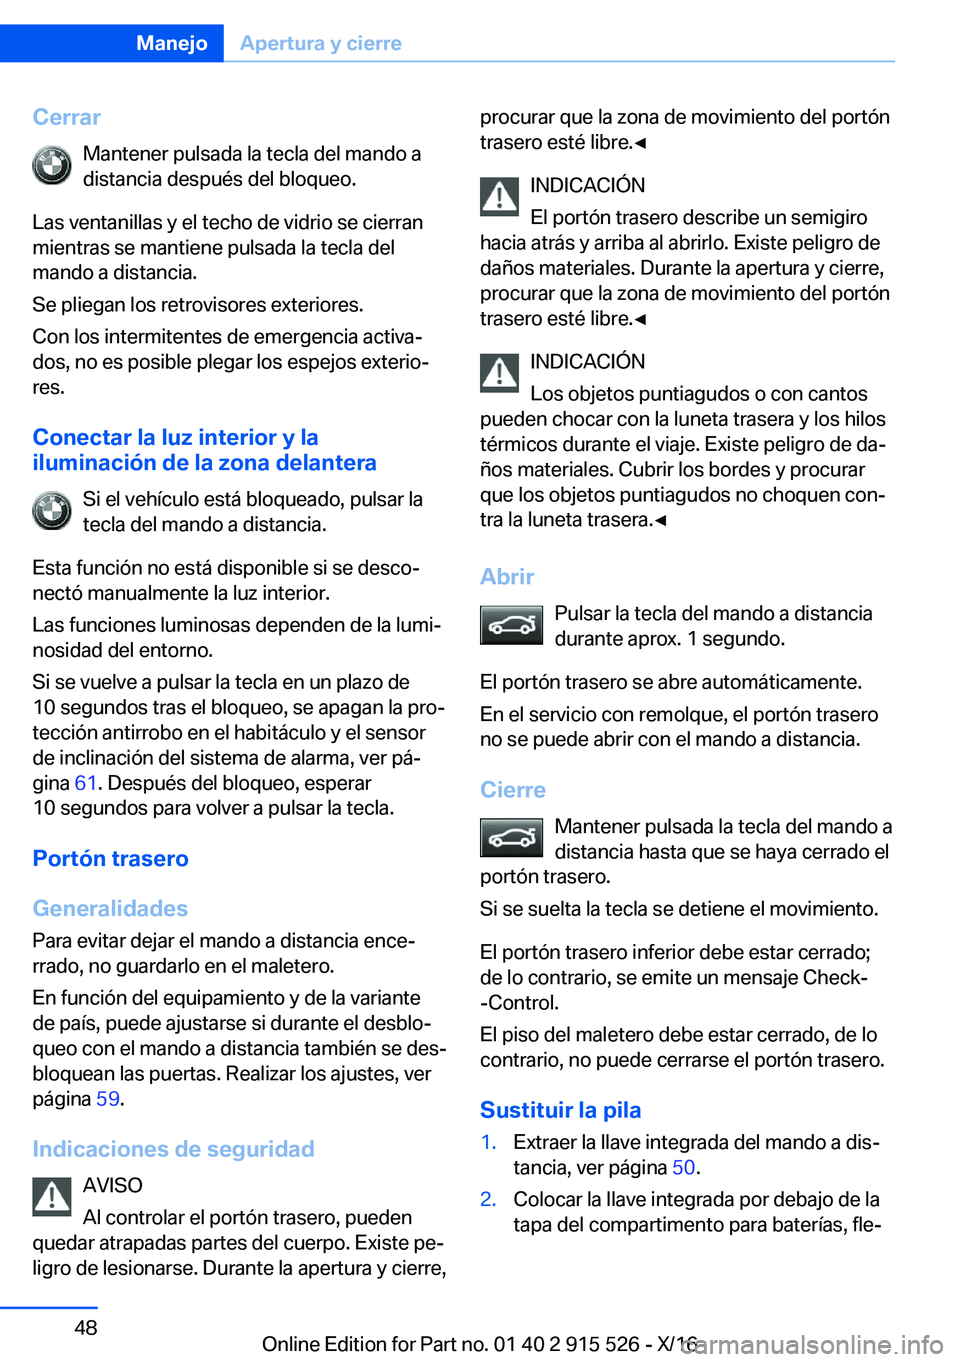 BMW X5 2017  Manuales de Empleo (in Spanish) �C�e�r�r�a�r�M�a�n�t�e�n�e�r� �p�u�l�s�a�d�a� �l�a� �t�e�c�l�a� �d�e�l� �m�a�n�d�o� �a�d�i�s�t�a�n�c�i�a� �d�e�s�p�u�é�s� �d�e�l� �b�l�o�q�u�e�o�.
�L�a�s� �v�e�n�t�a�n�i�l�l�a�s� �y� �e�l� �t�e�c�h�o